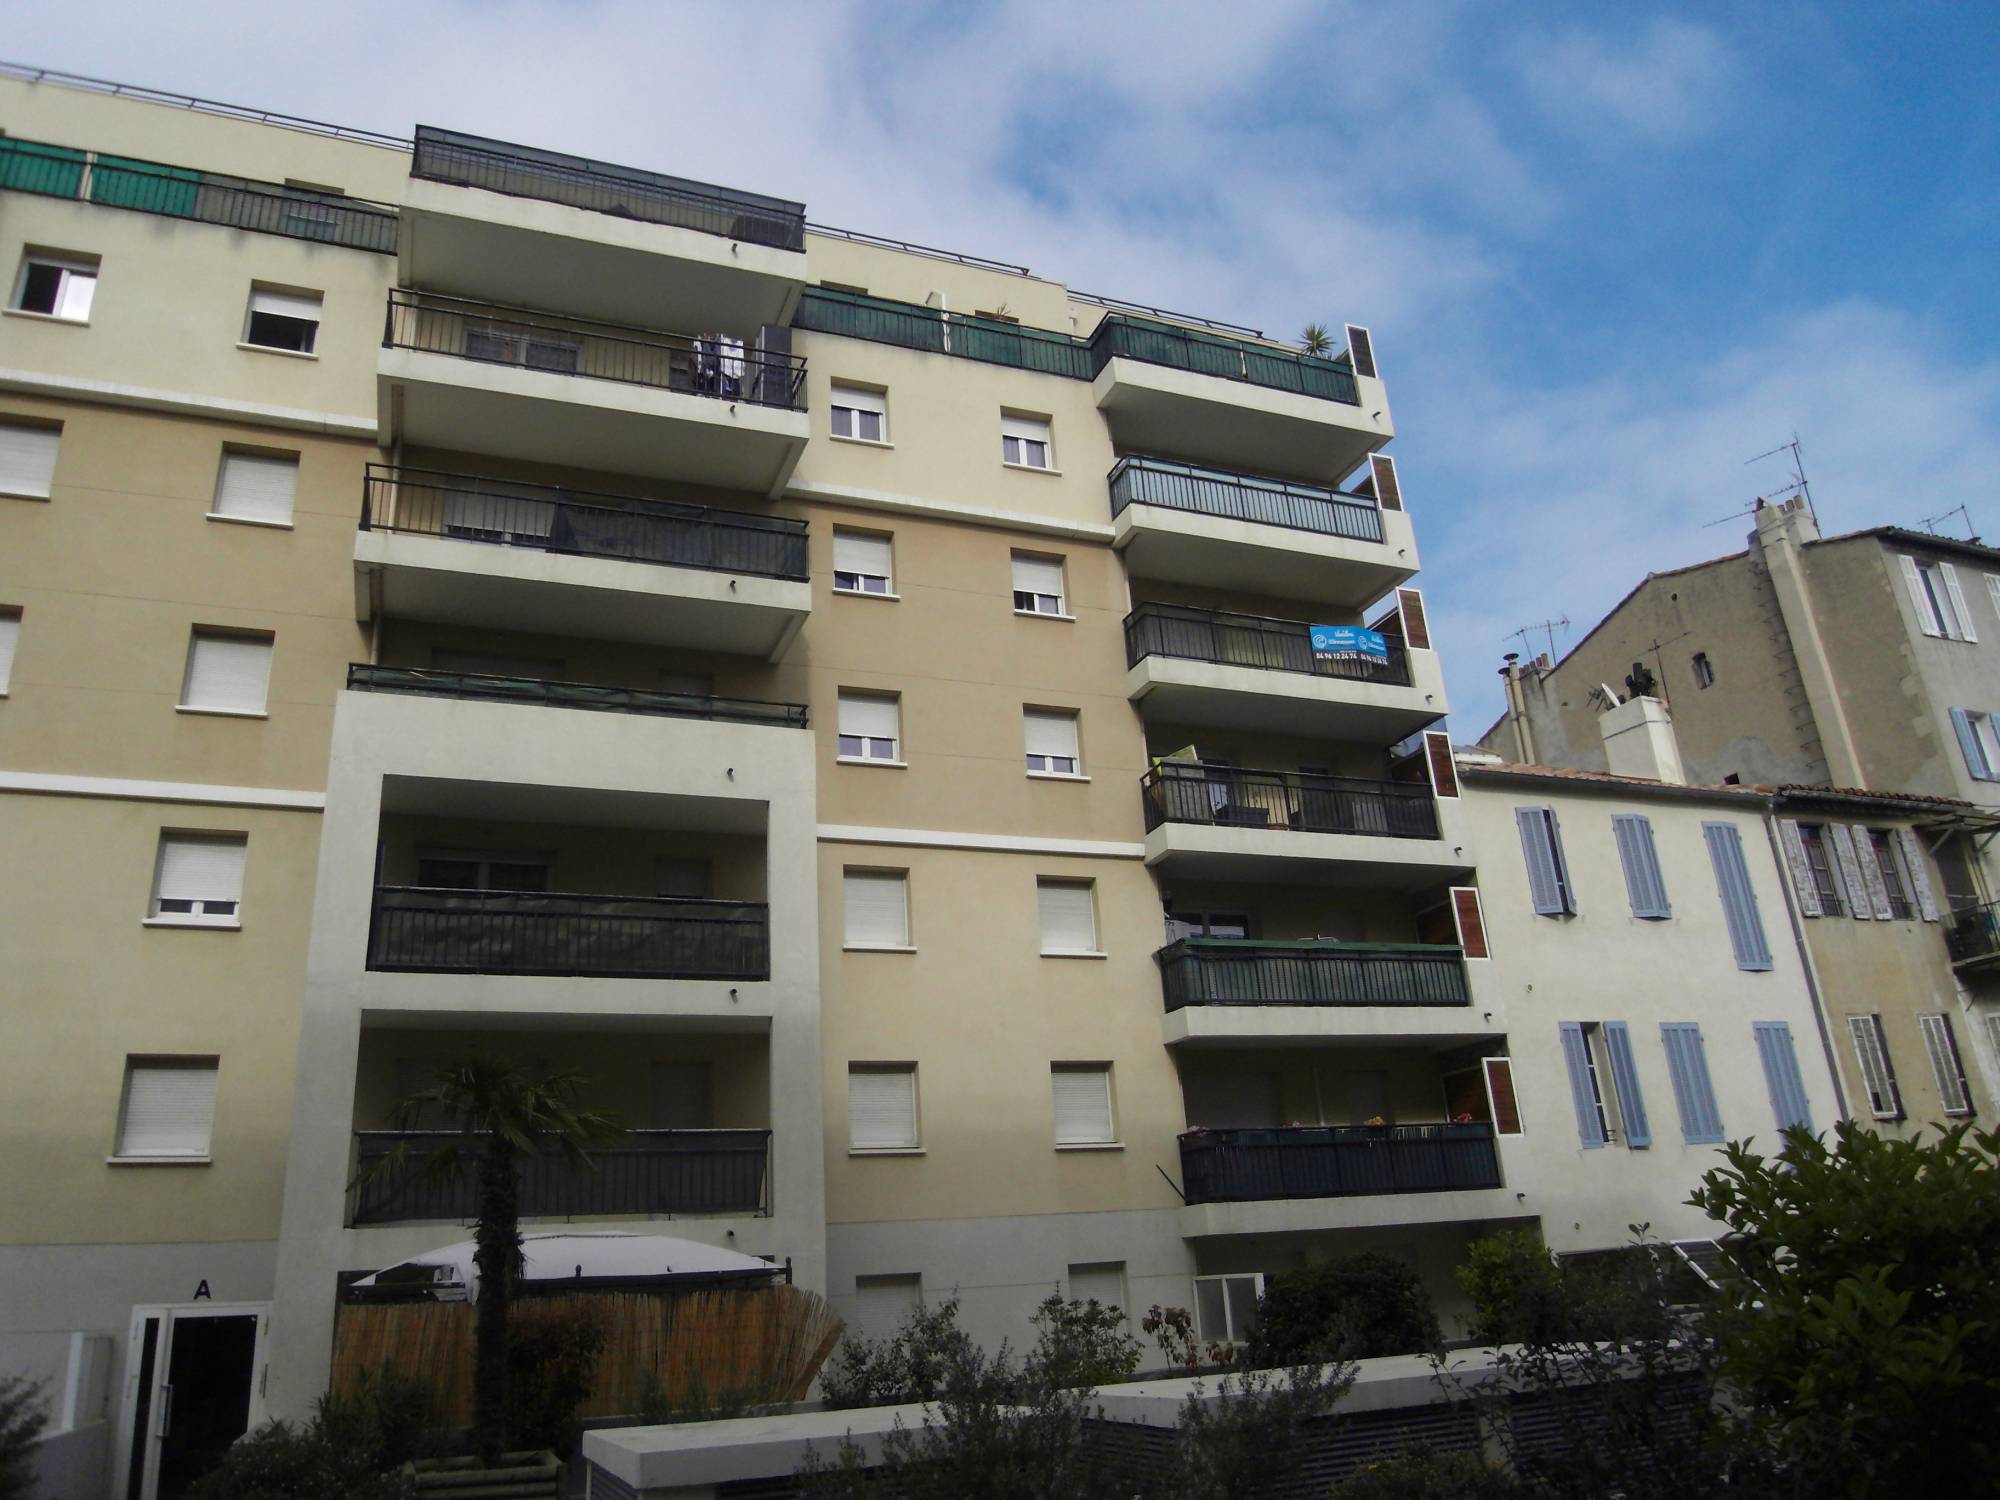 Spécial investissement locatif - A vendre appartement 3 pièces secteur Belle de Mai 13003 Marseille 